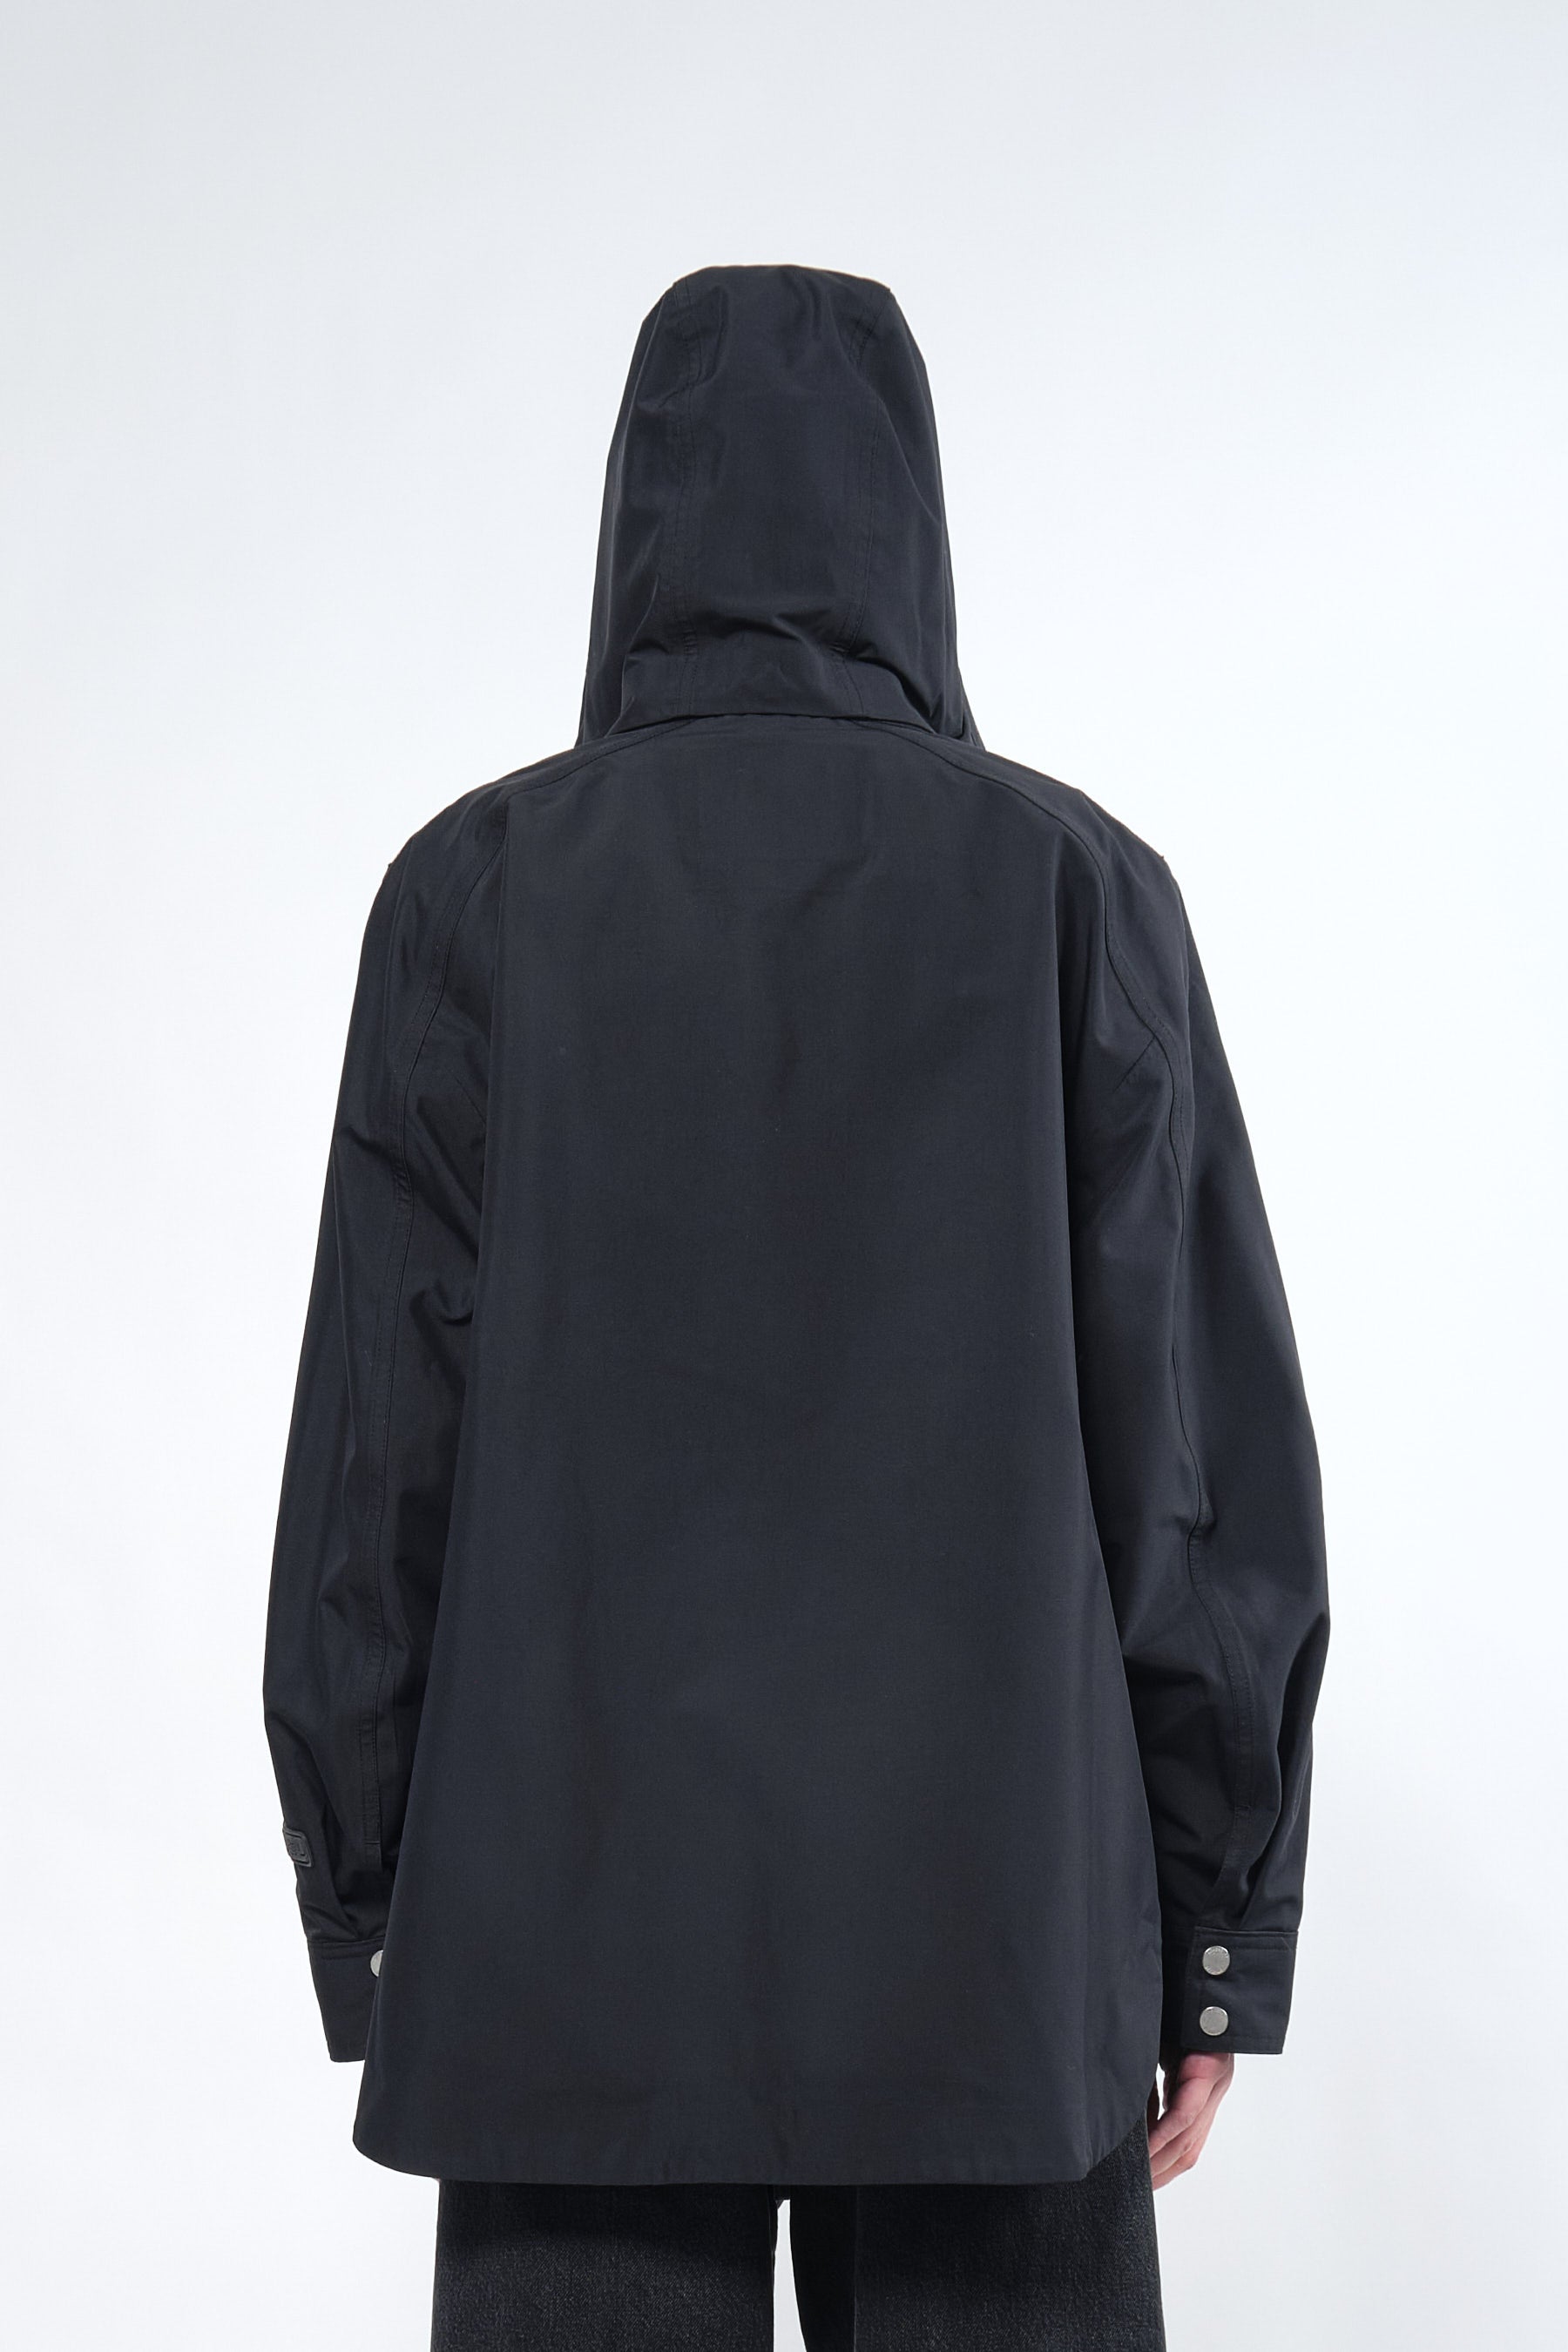  3L Black Waterproof Rain Jacket with Hood - Adhere To  - 8